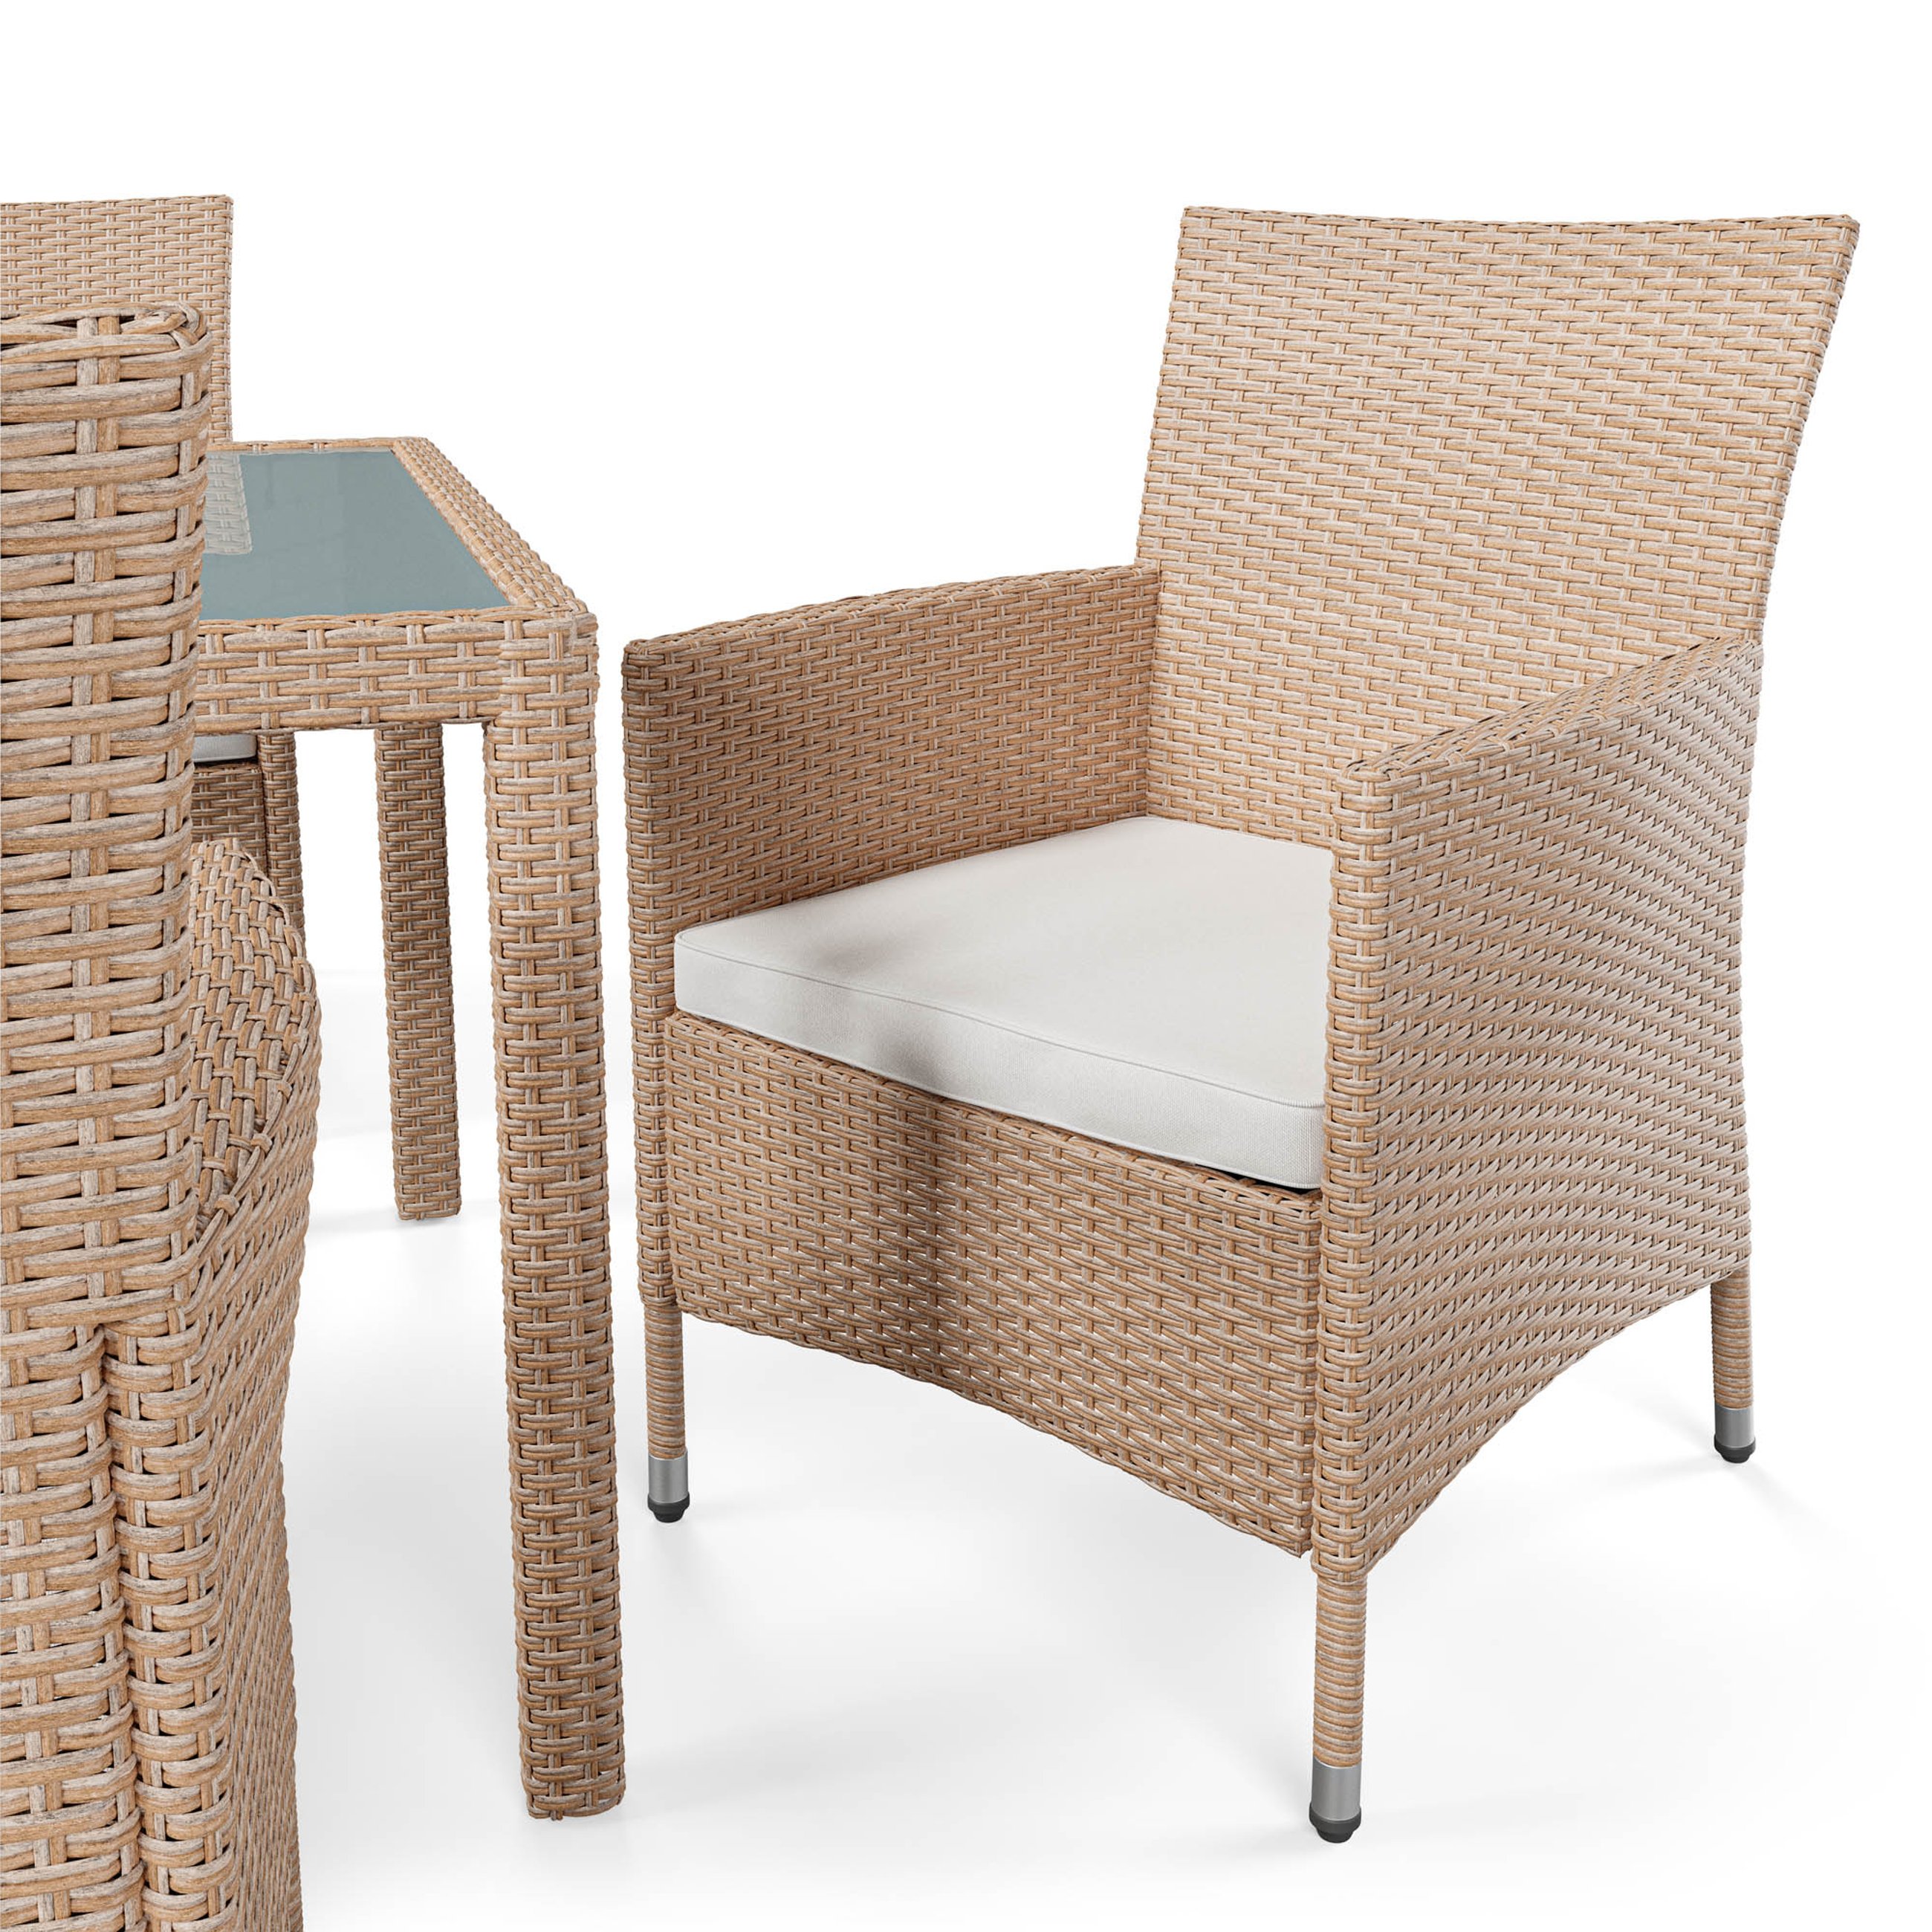 Fotele, w zestawie mebli ogrodowych Verona beżowa 8+1, wyposażone są w miękkie poduszki o grubości 6 cm